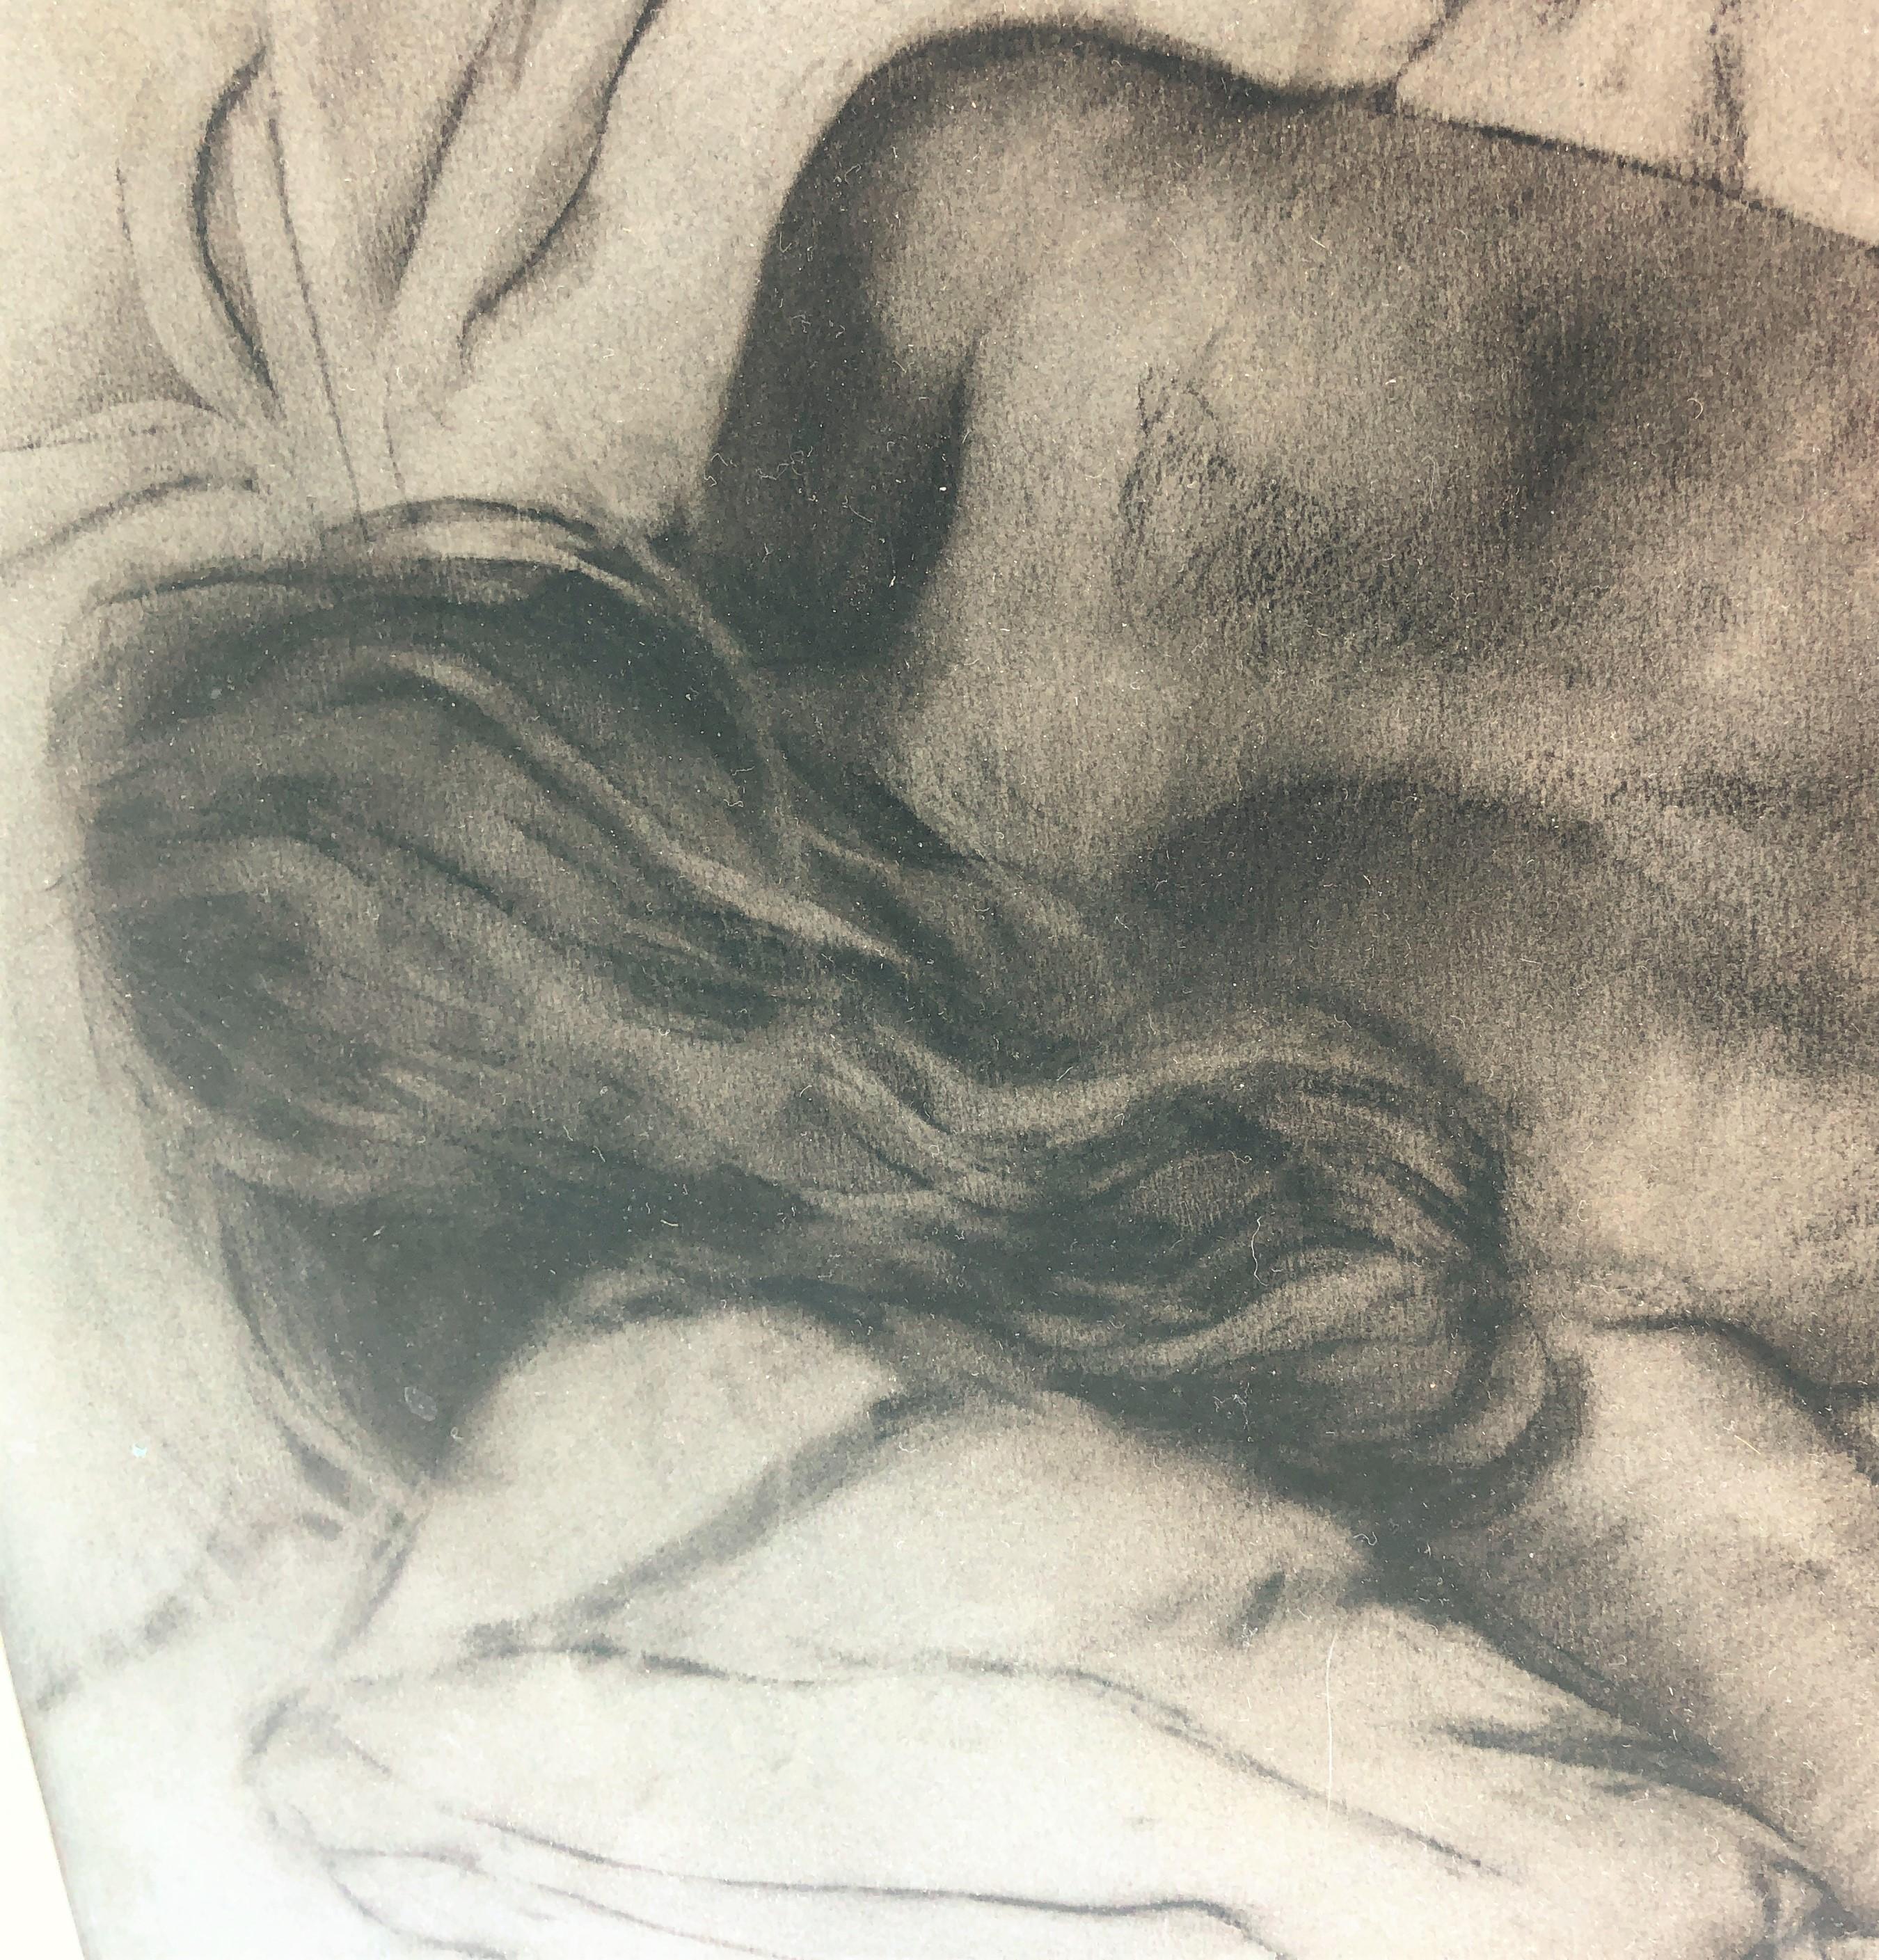 Nude woman charcoal drawing - Realist Art by José Luis Fuentetaja